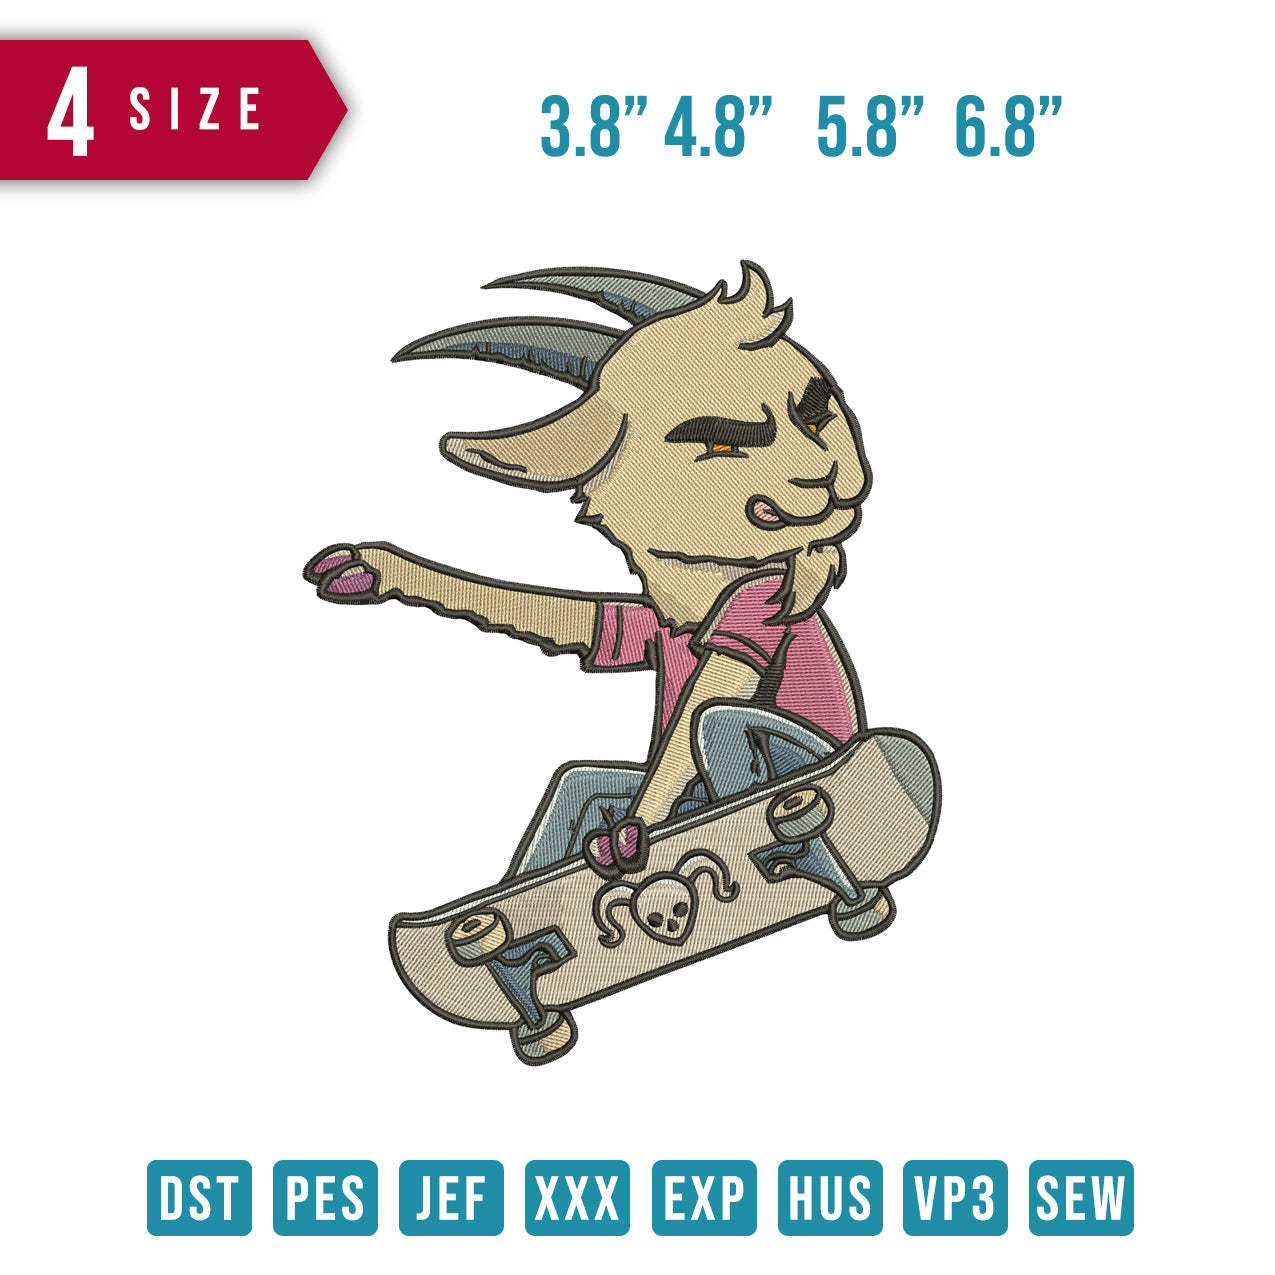 Goat SkateBoard